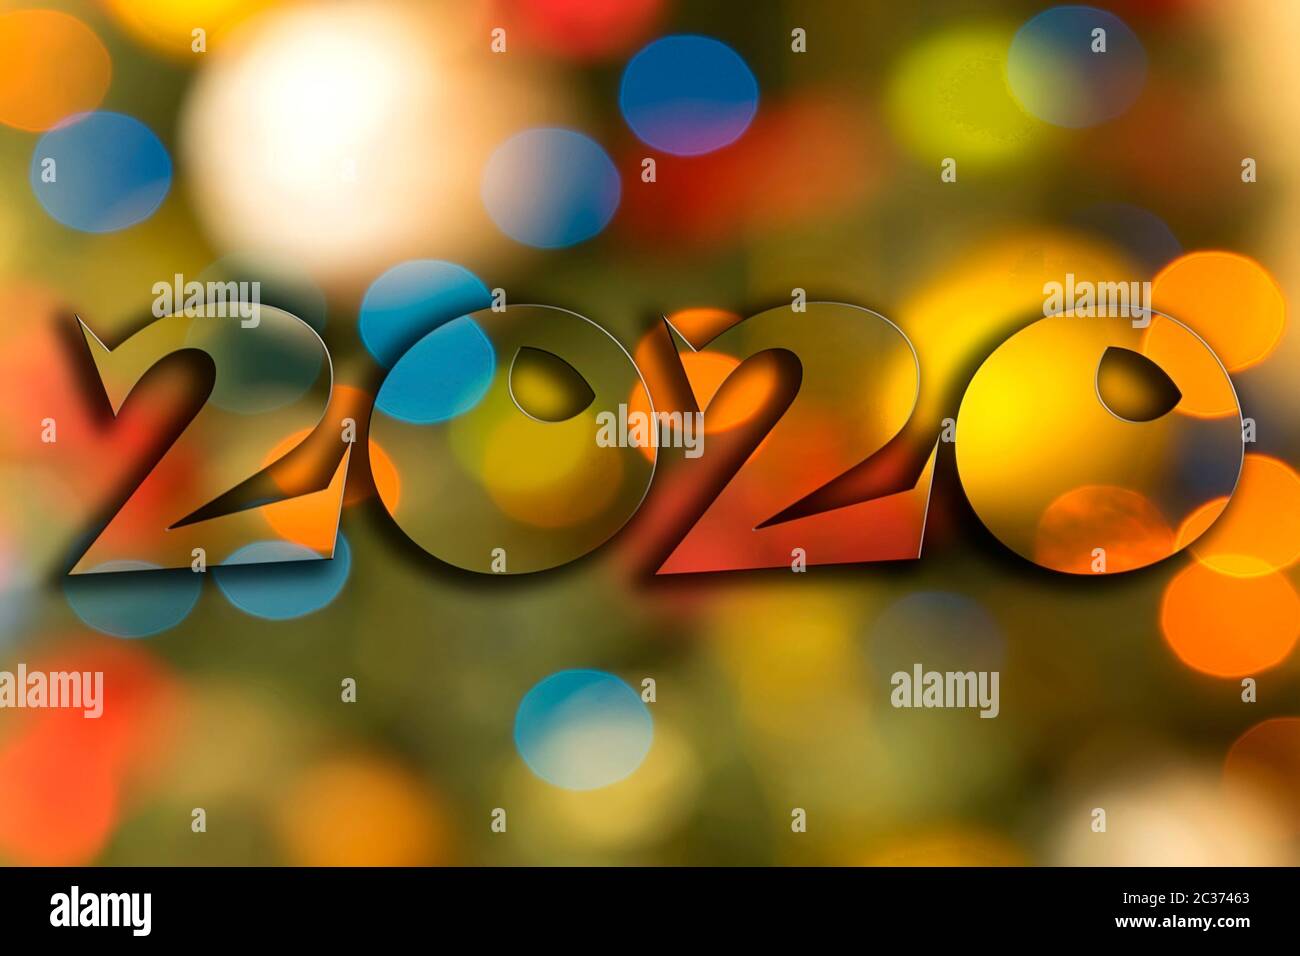 Neujahr 2020 Wort über Weihnachten Hintergrund Stockfoto